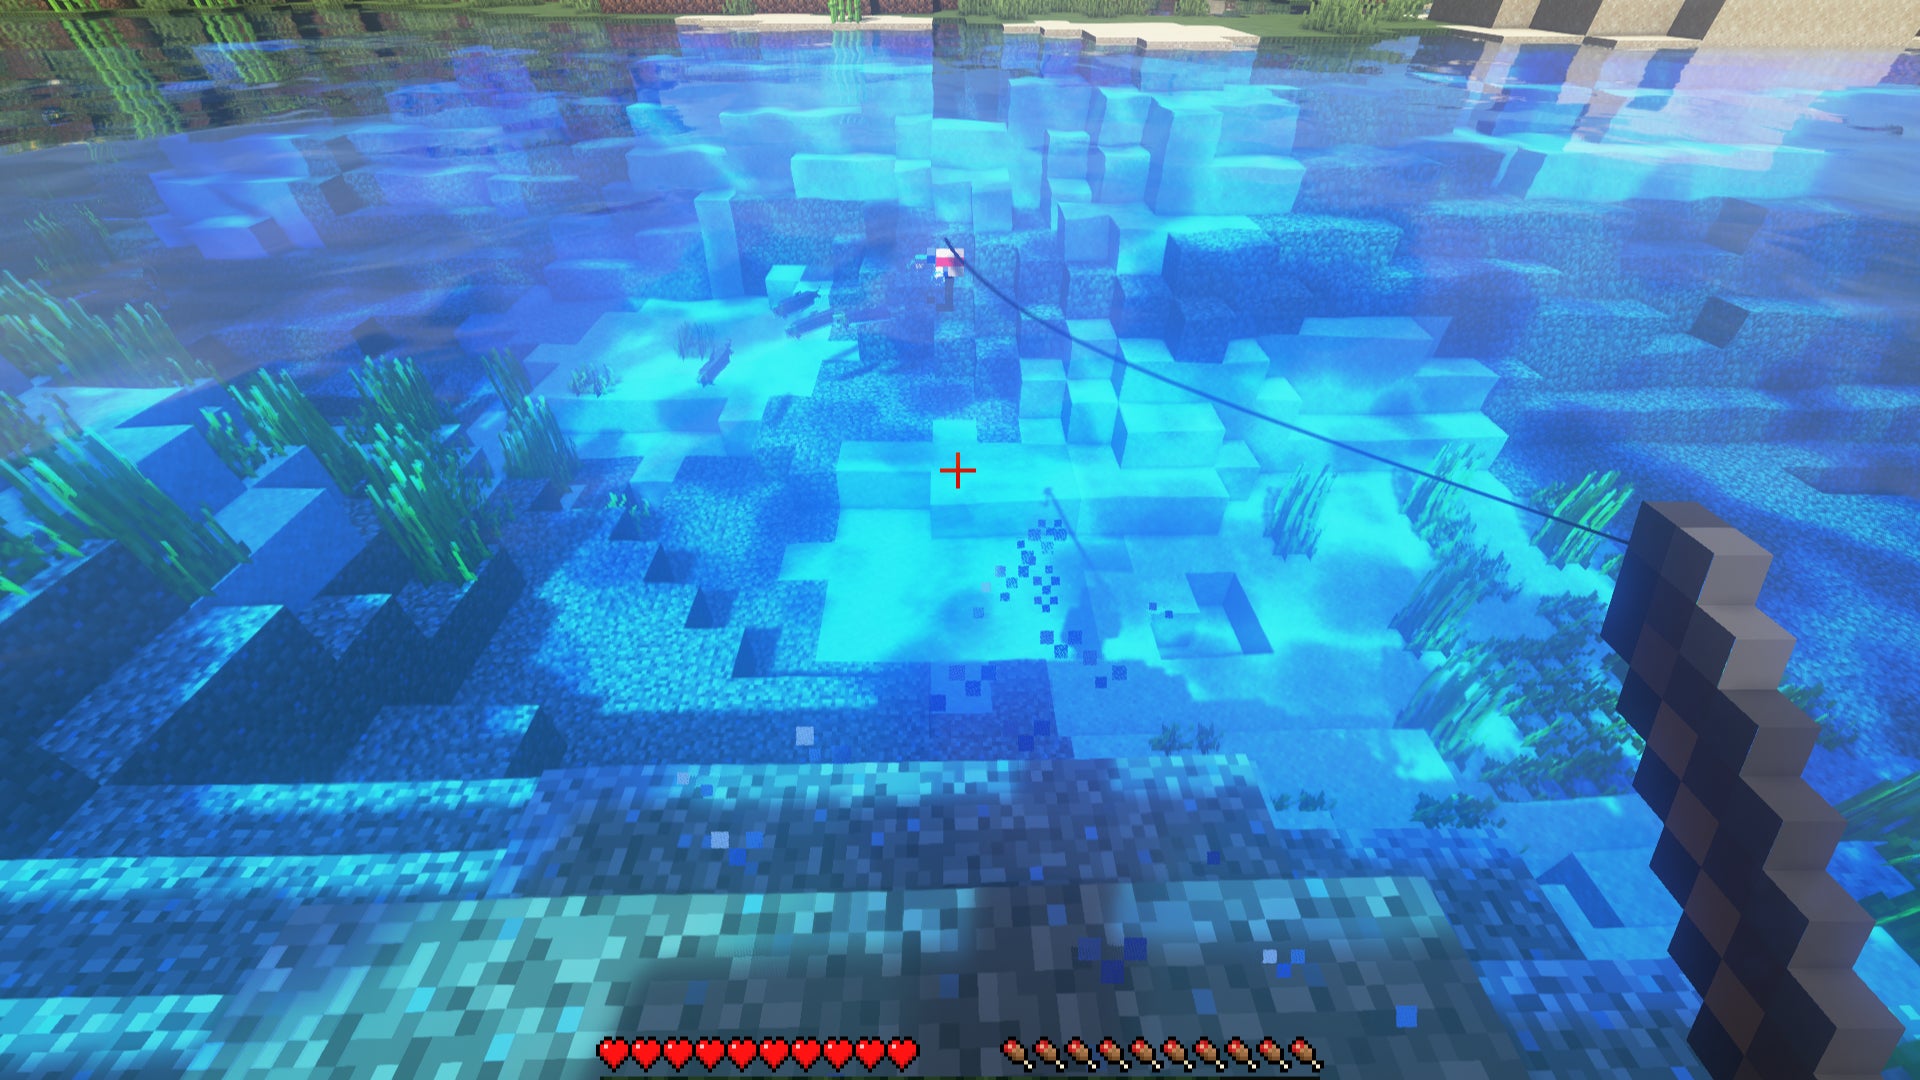 Игрок В Minecraft Ловит Рыбу В Озере.  Между Поплавком И Игроком V-Образный Набор Частиц Указывает На Присутствие Рыбы.